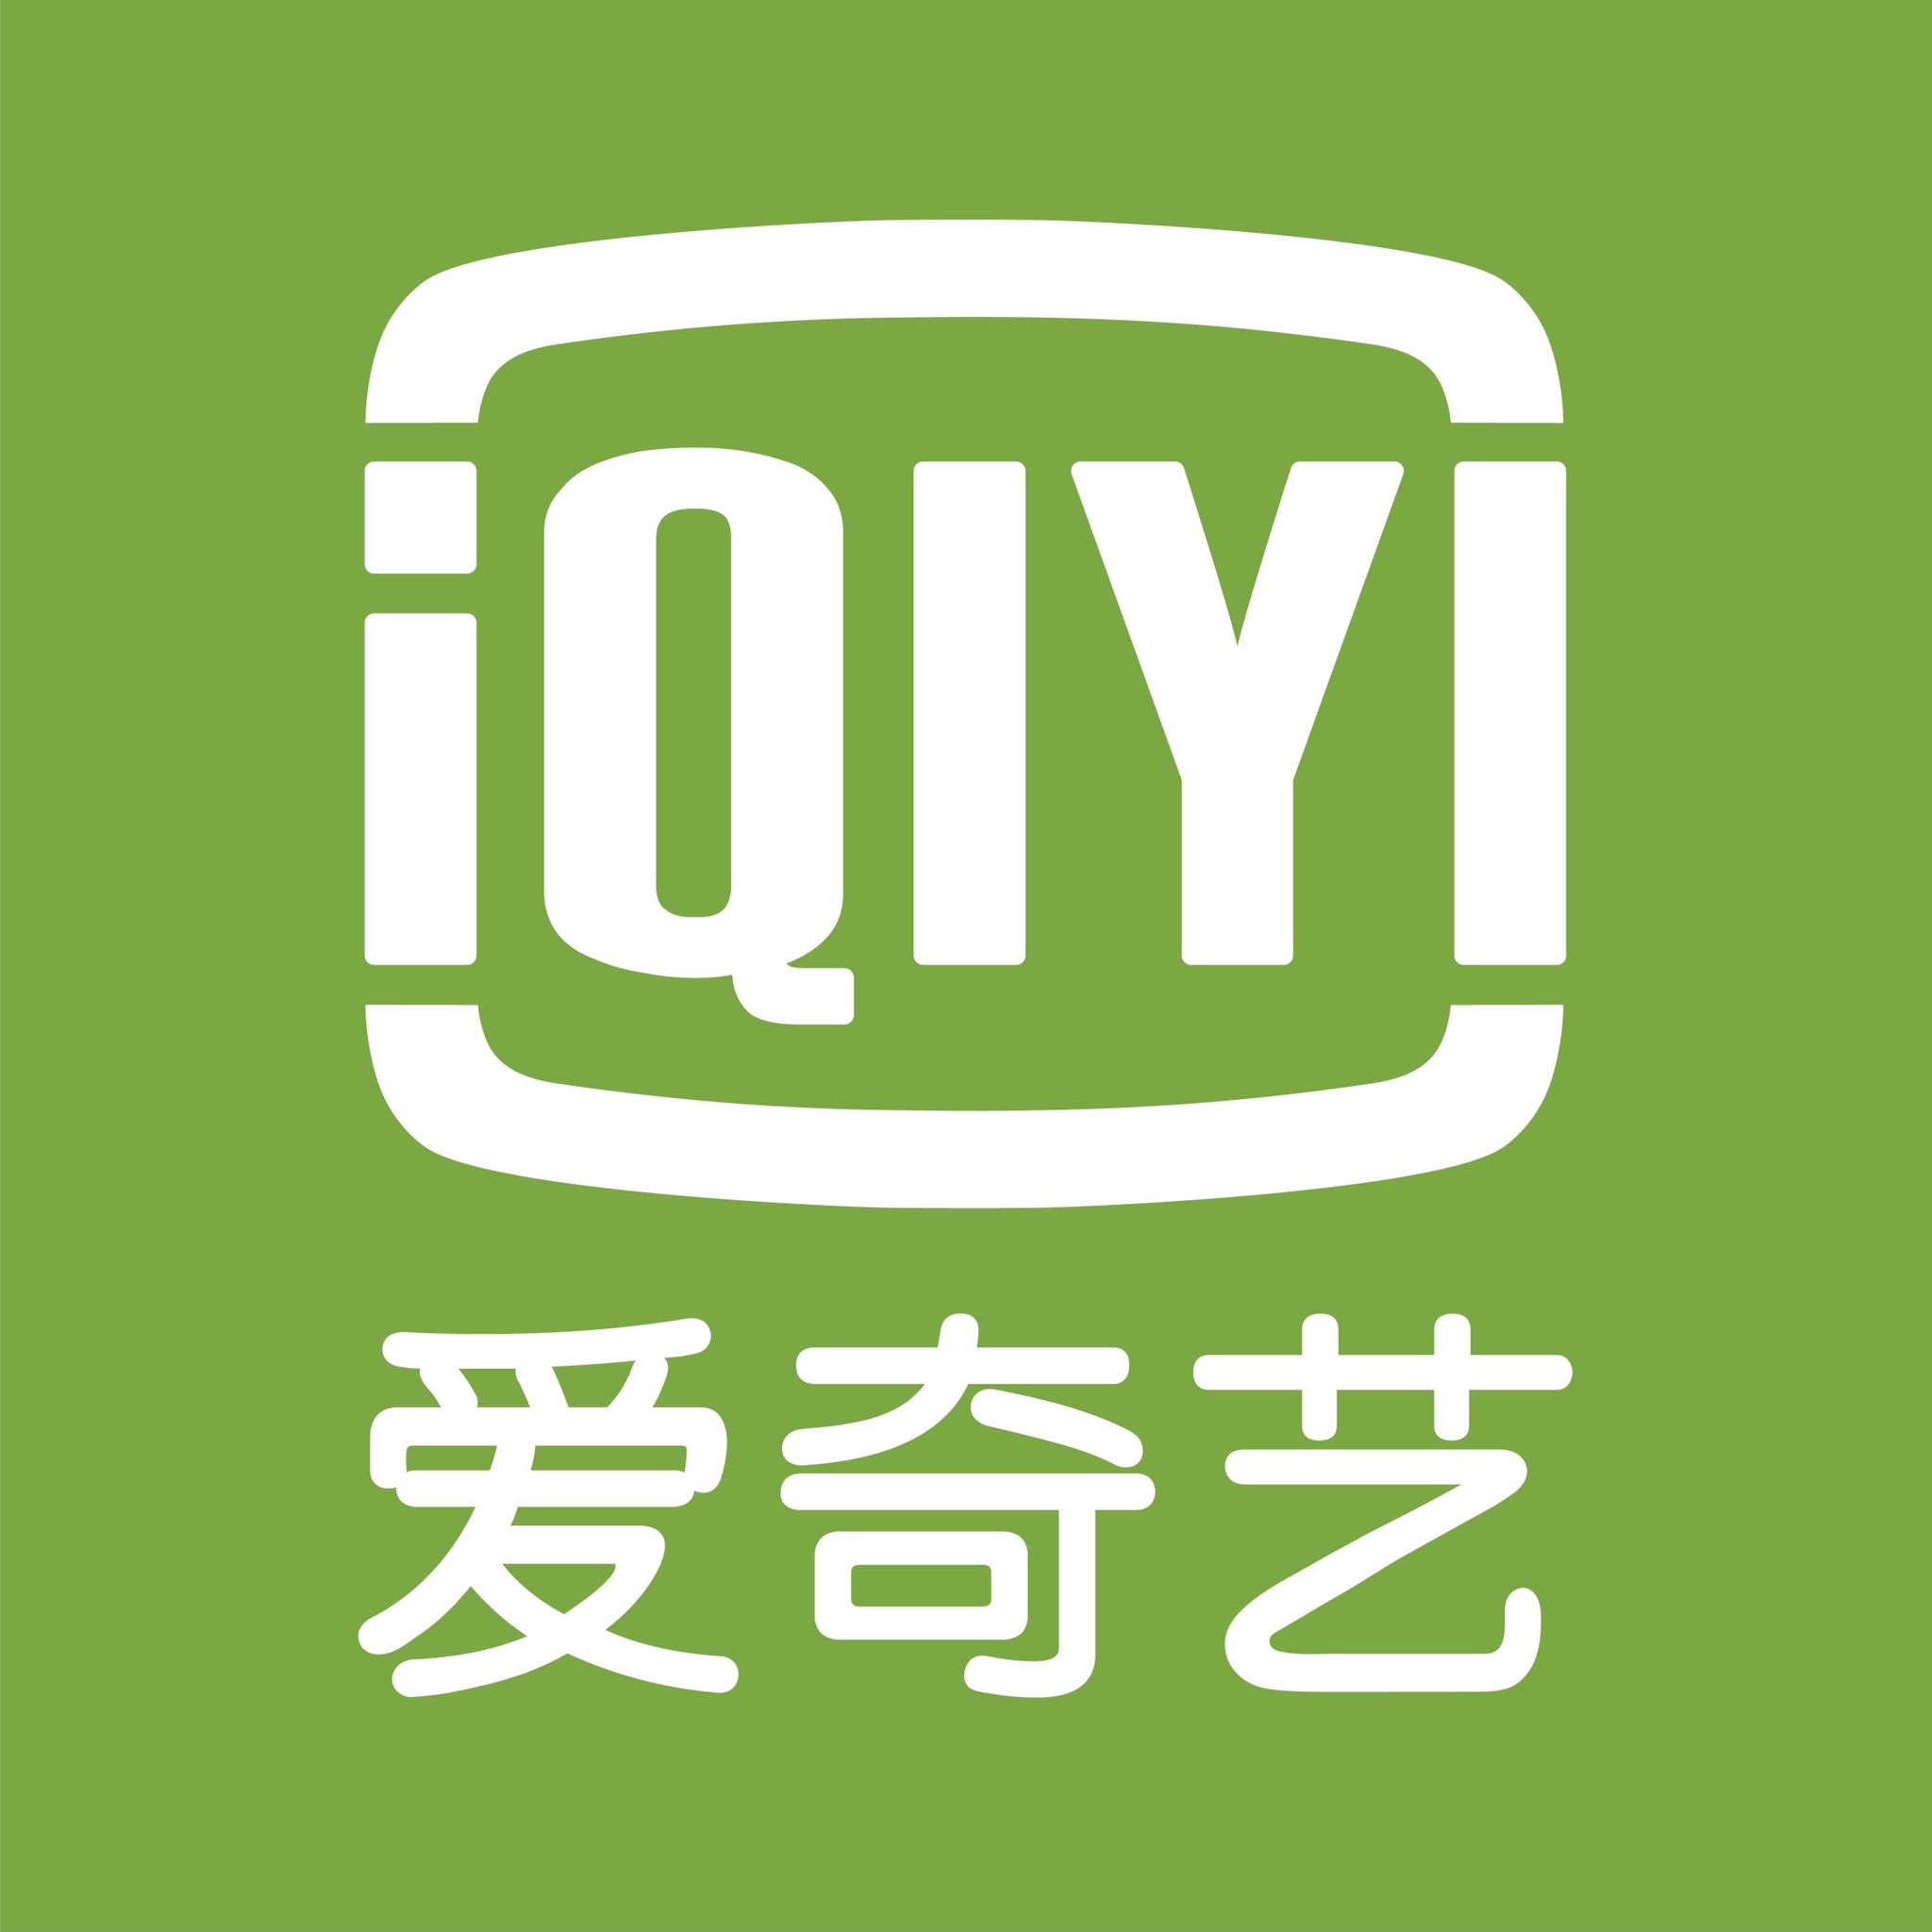 爱奇艺logo 原版图片